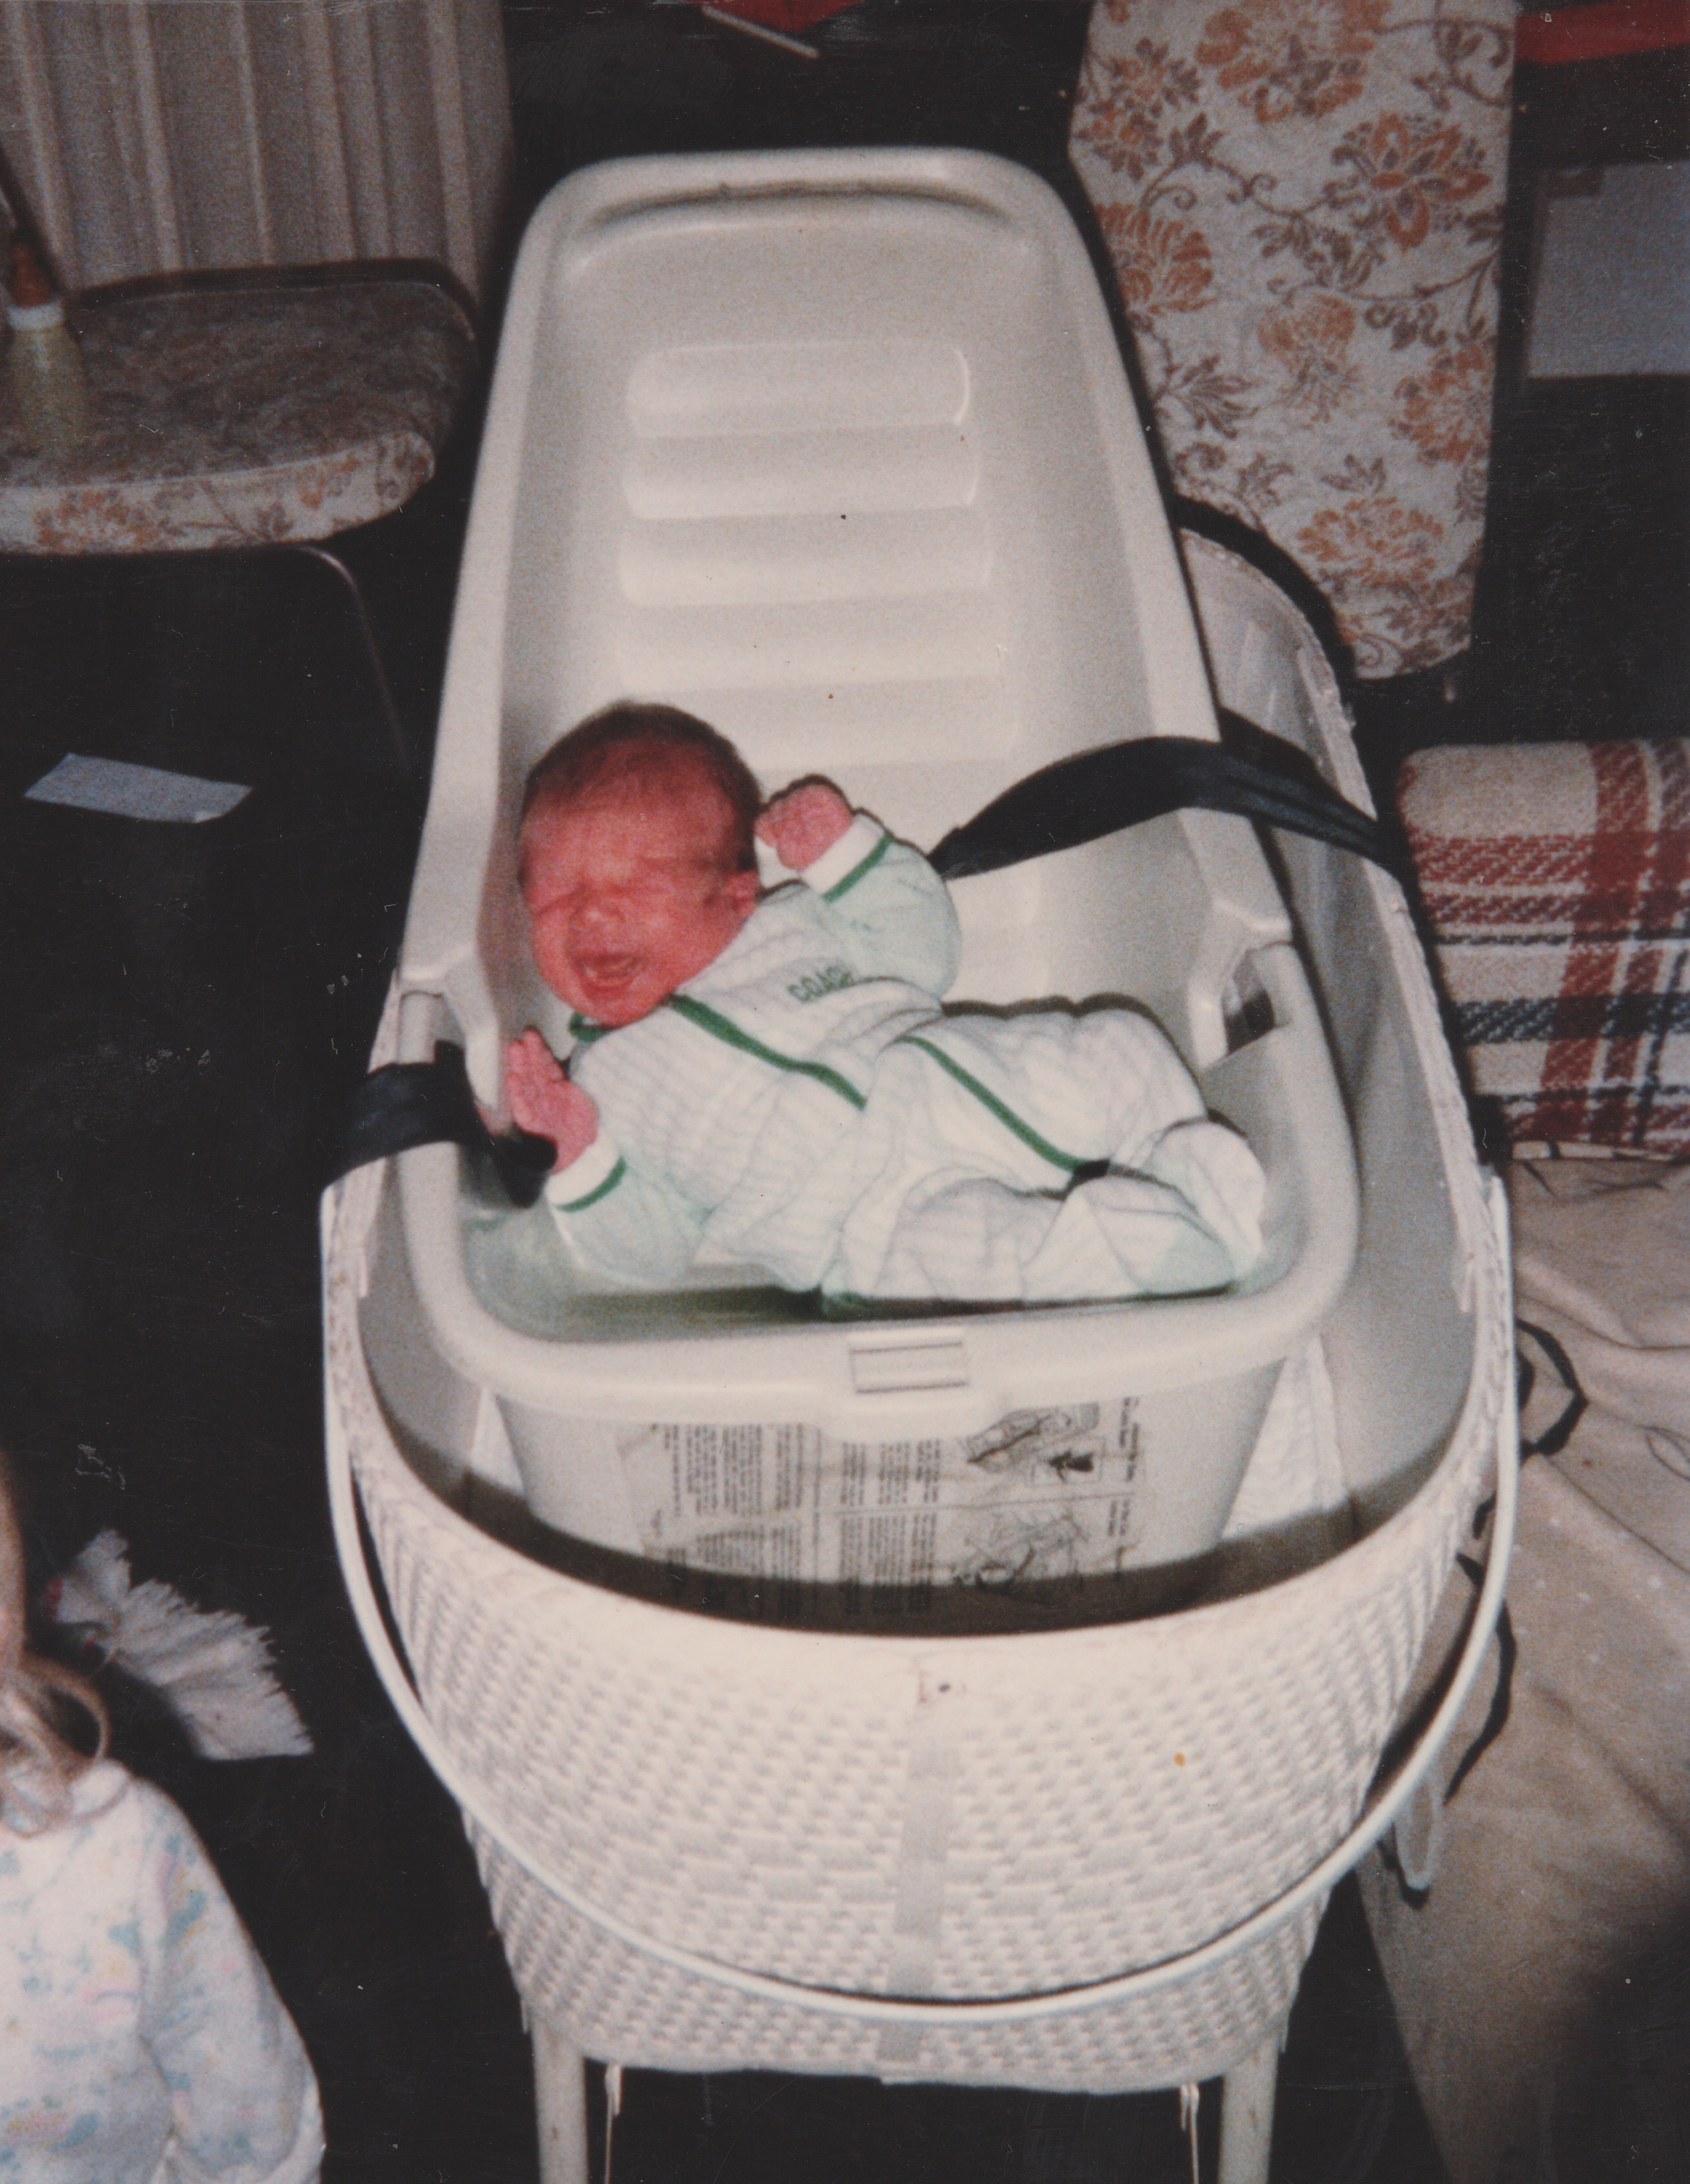 1982 - Baby Ricky in a crib 01.jpg